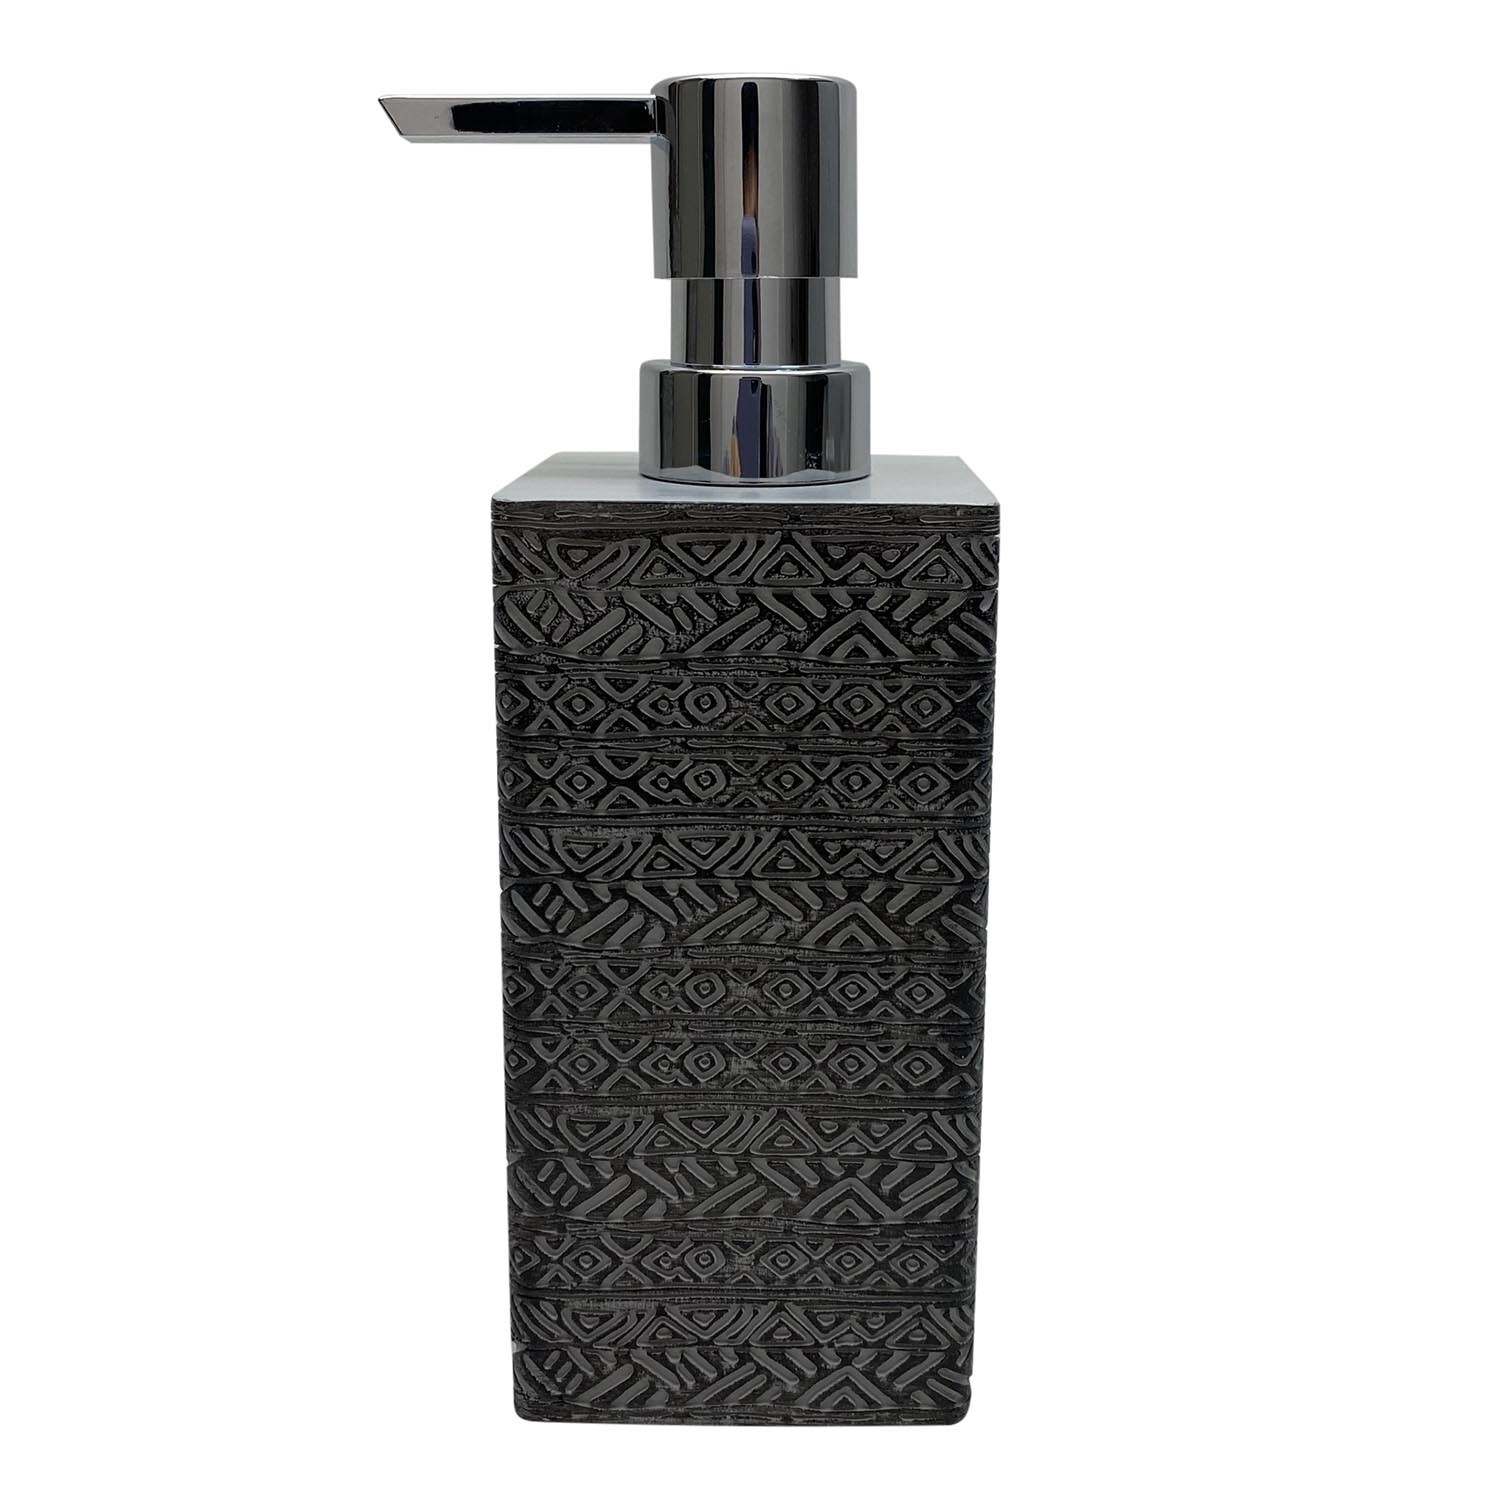 Egyptian Soap Dispenser - Grey Image